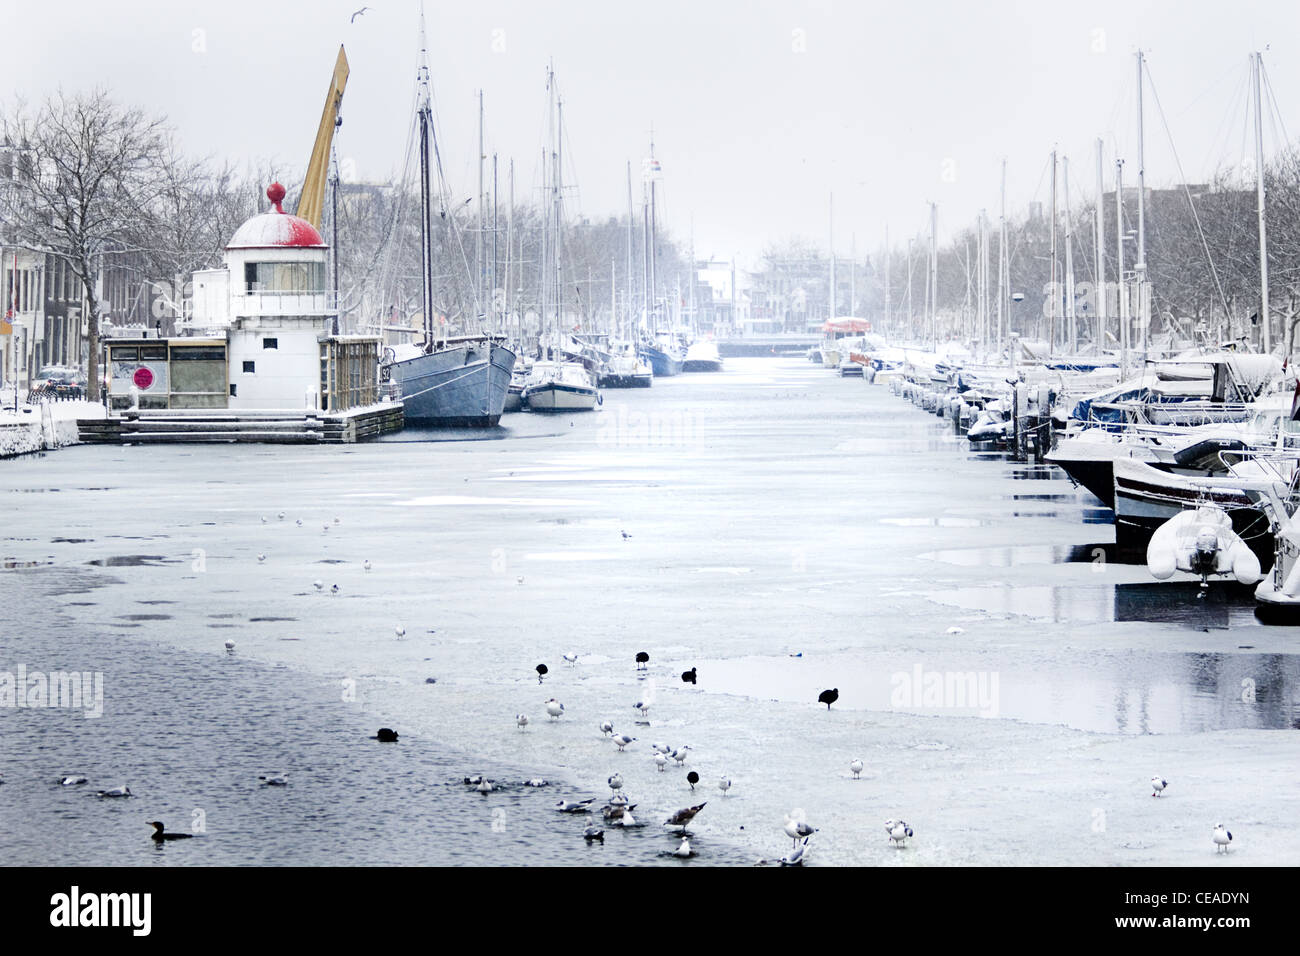 Schnee in der Stadt - Hafen im Winter, es schneit - horizontales Bild Stockfoto